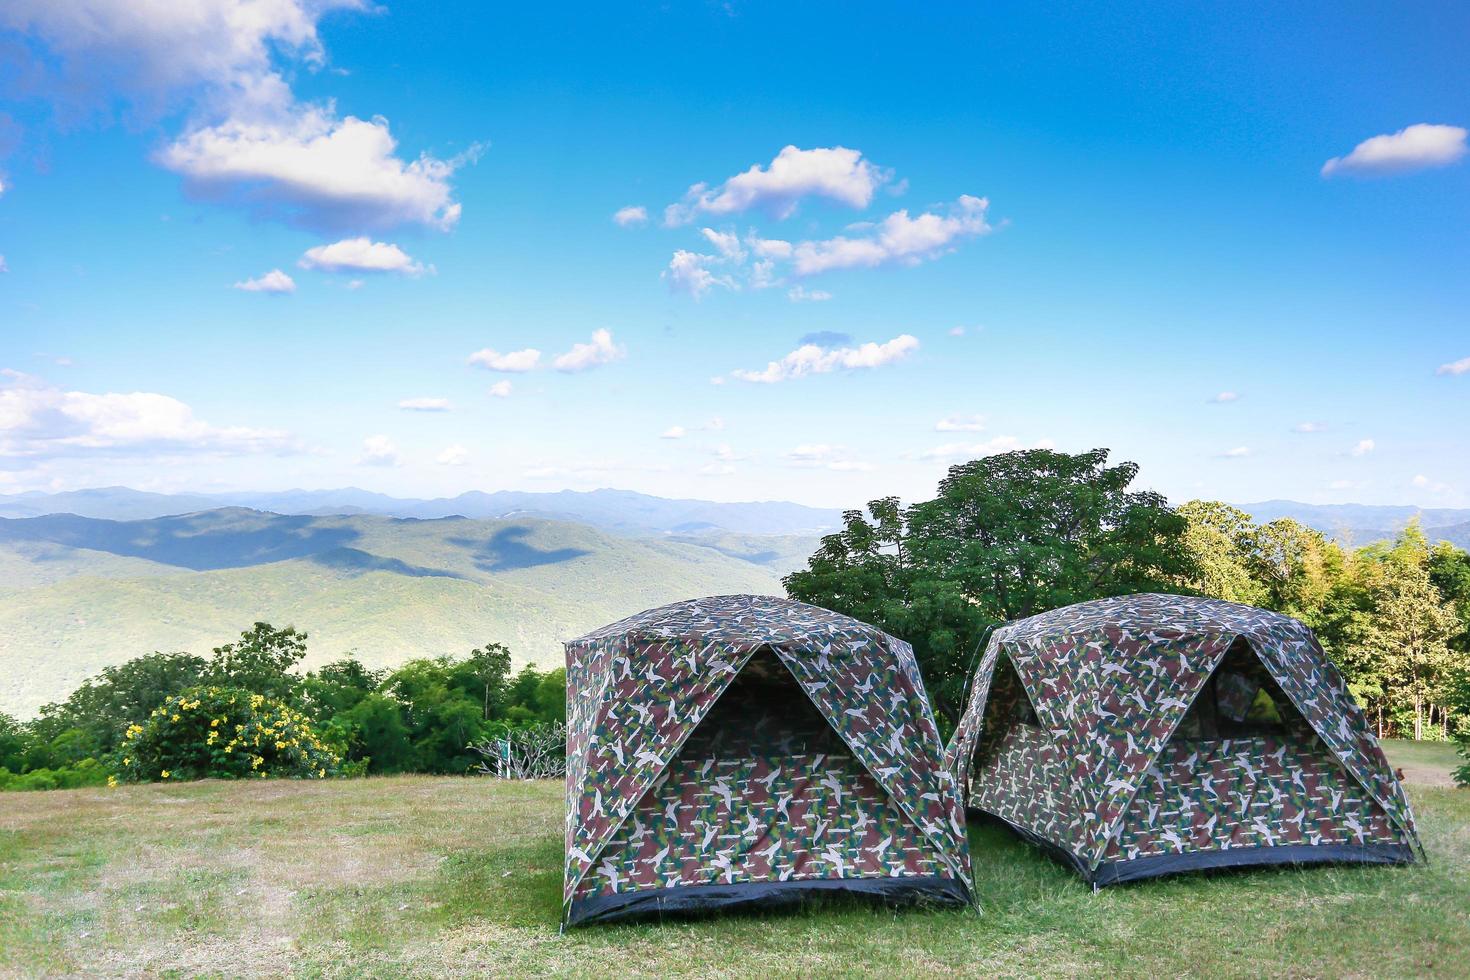 Zelt auf dem Hügel unter den Bergen unter klarem Himmel im schönen Sommerlandschaftslager. Das Tarnzelt steht bei Sonnenaufgang als Naturtapete auf grünen Feldern und Bergen foto